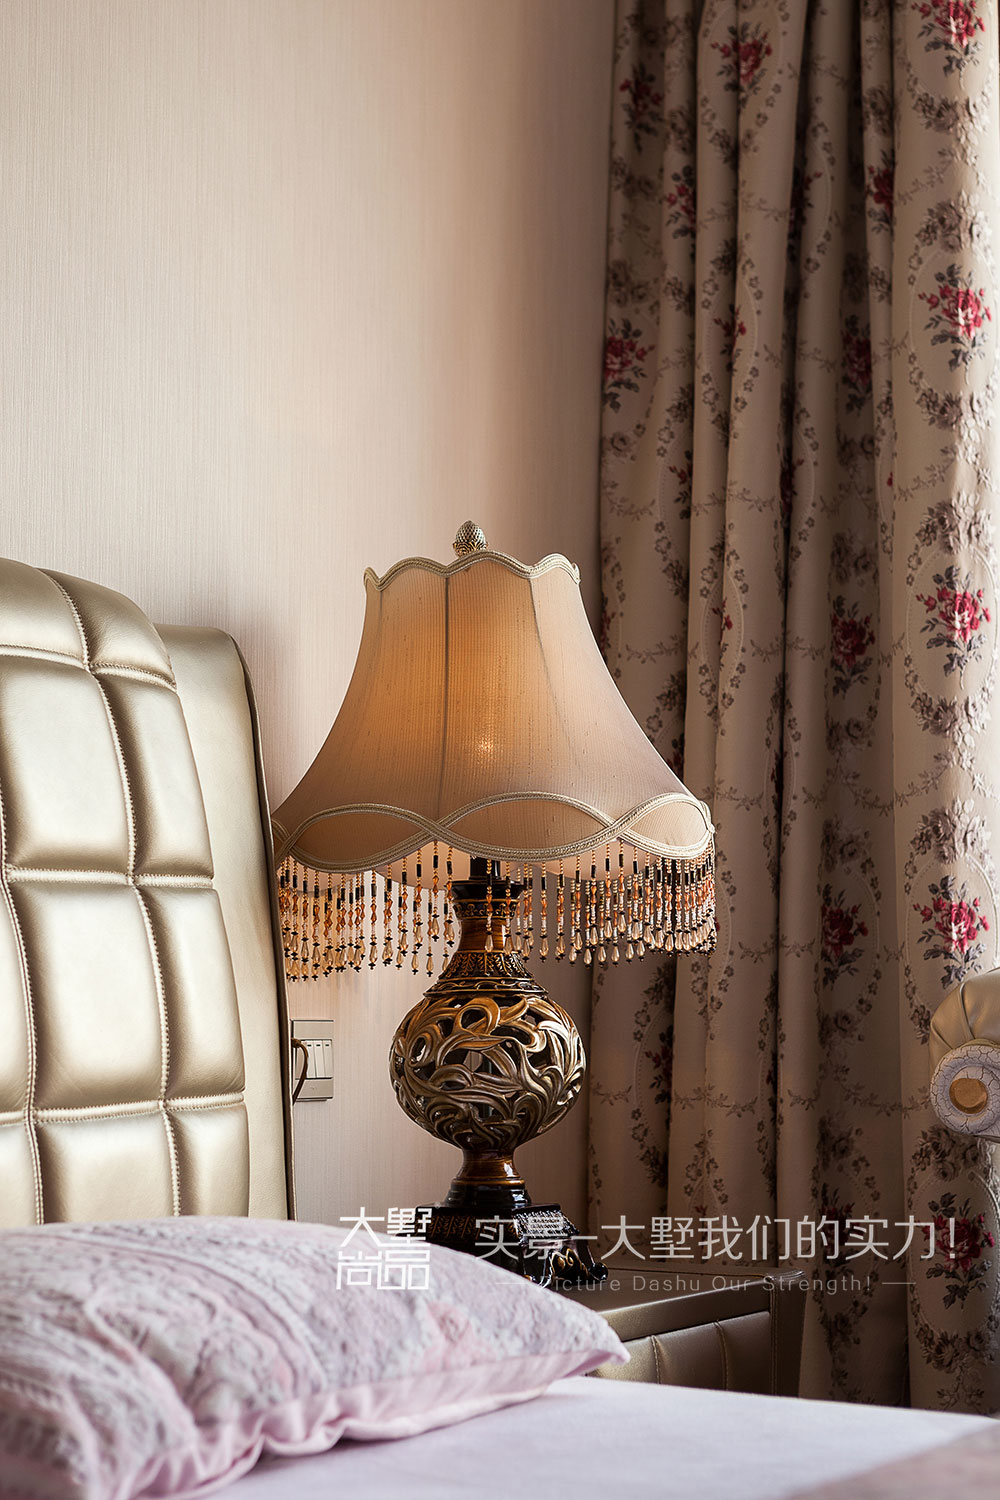 三居 欧式风 咖色 大墅尚品 卧室图片来自大墅尚品-由伟壮设计在欧式风三居室·光与影的视觉盛宴的分享